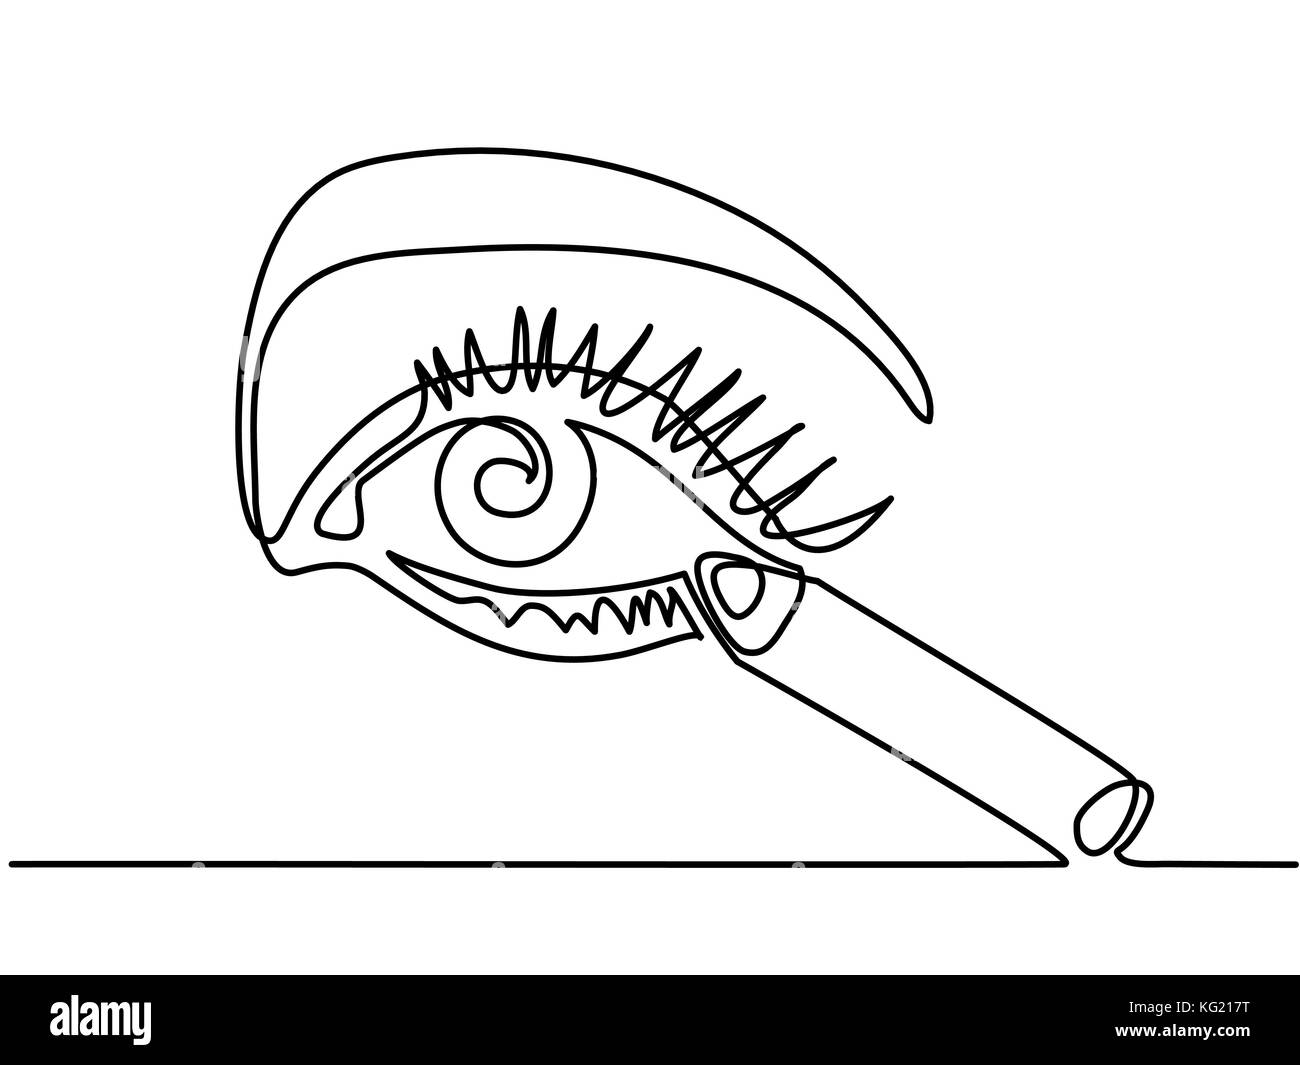 Durchgehende Linie zeichnen. Frau Eye Make up. Vector Illustration Stock Vektor